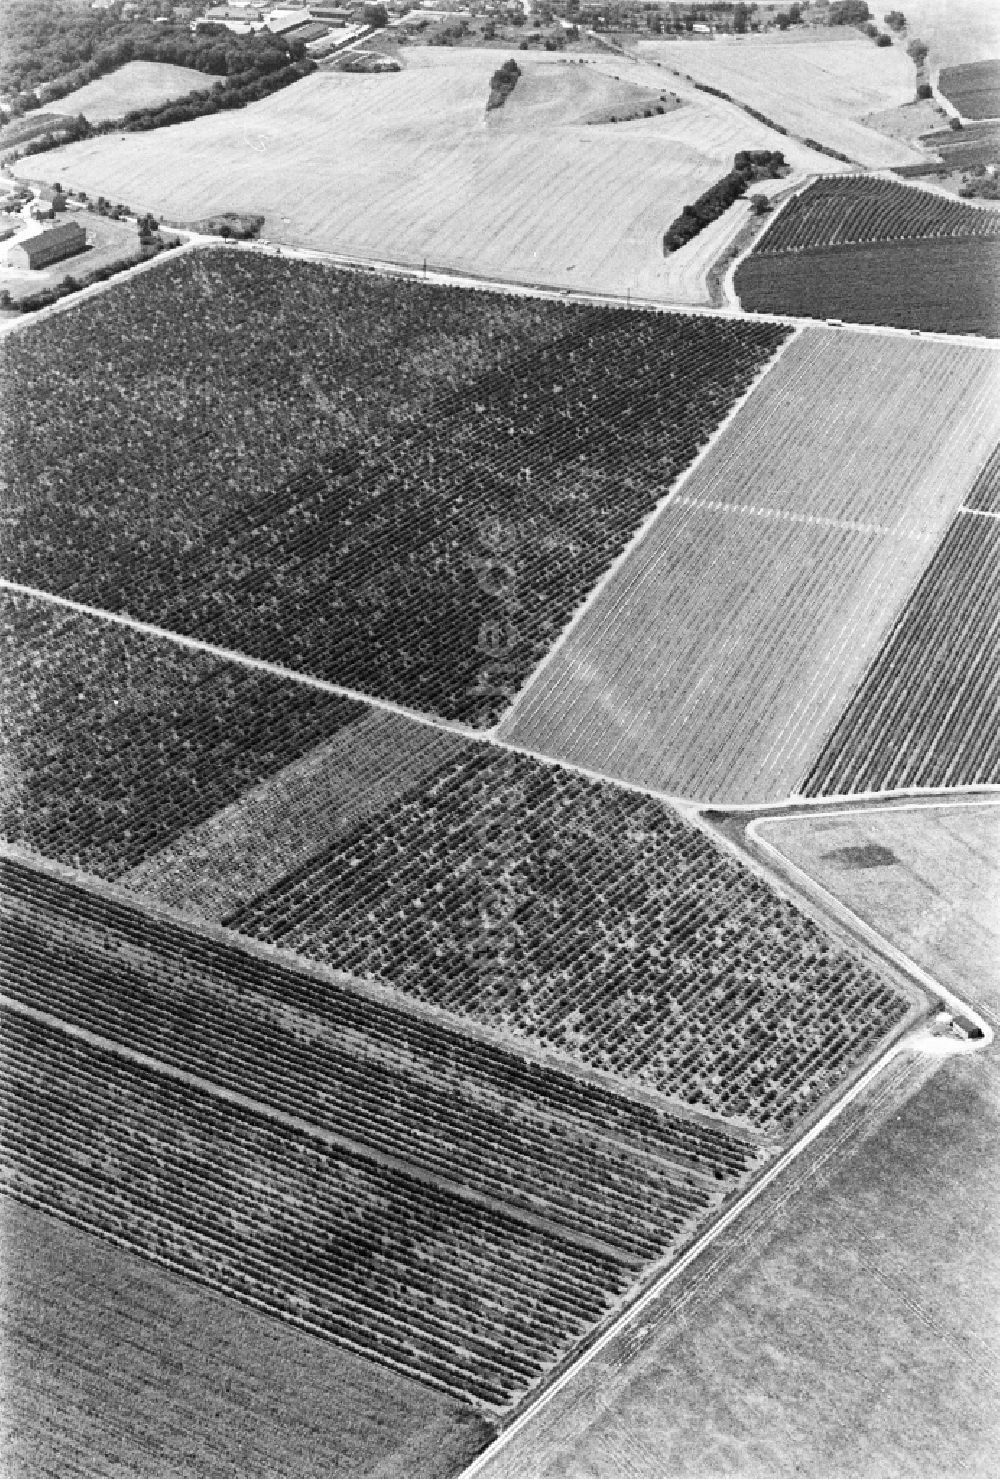 Luftbild Brachstedt - Strukturen auf landwirtschaftlichen Feldern in Brachstedt im Bundesland Sachsen-Anhalt, Deutschland